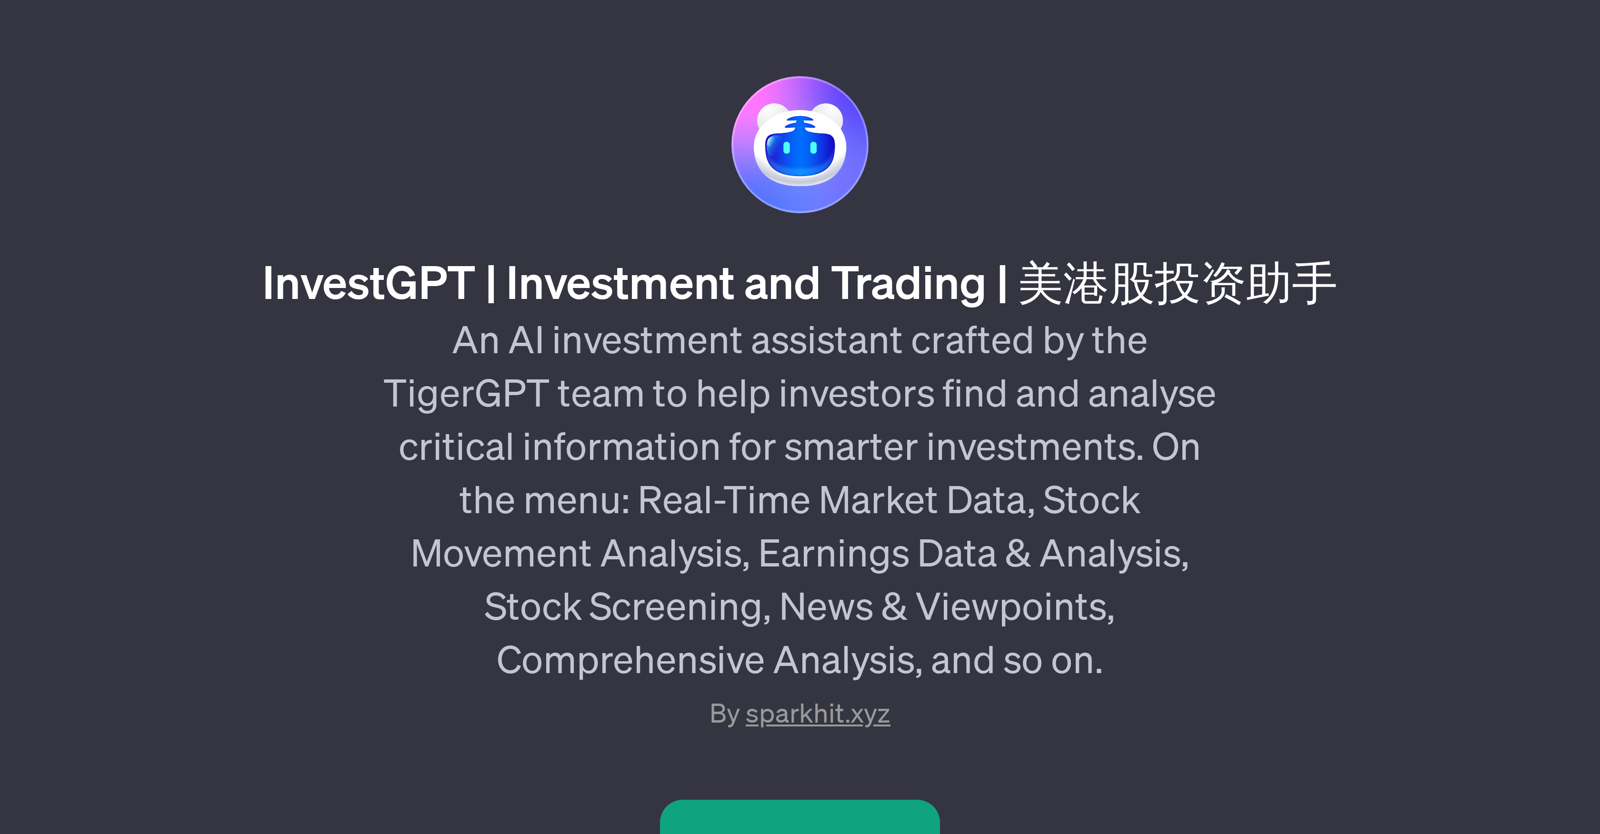 InvestGPT website